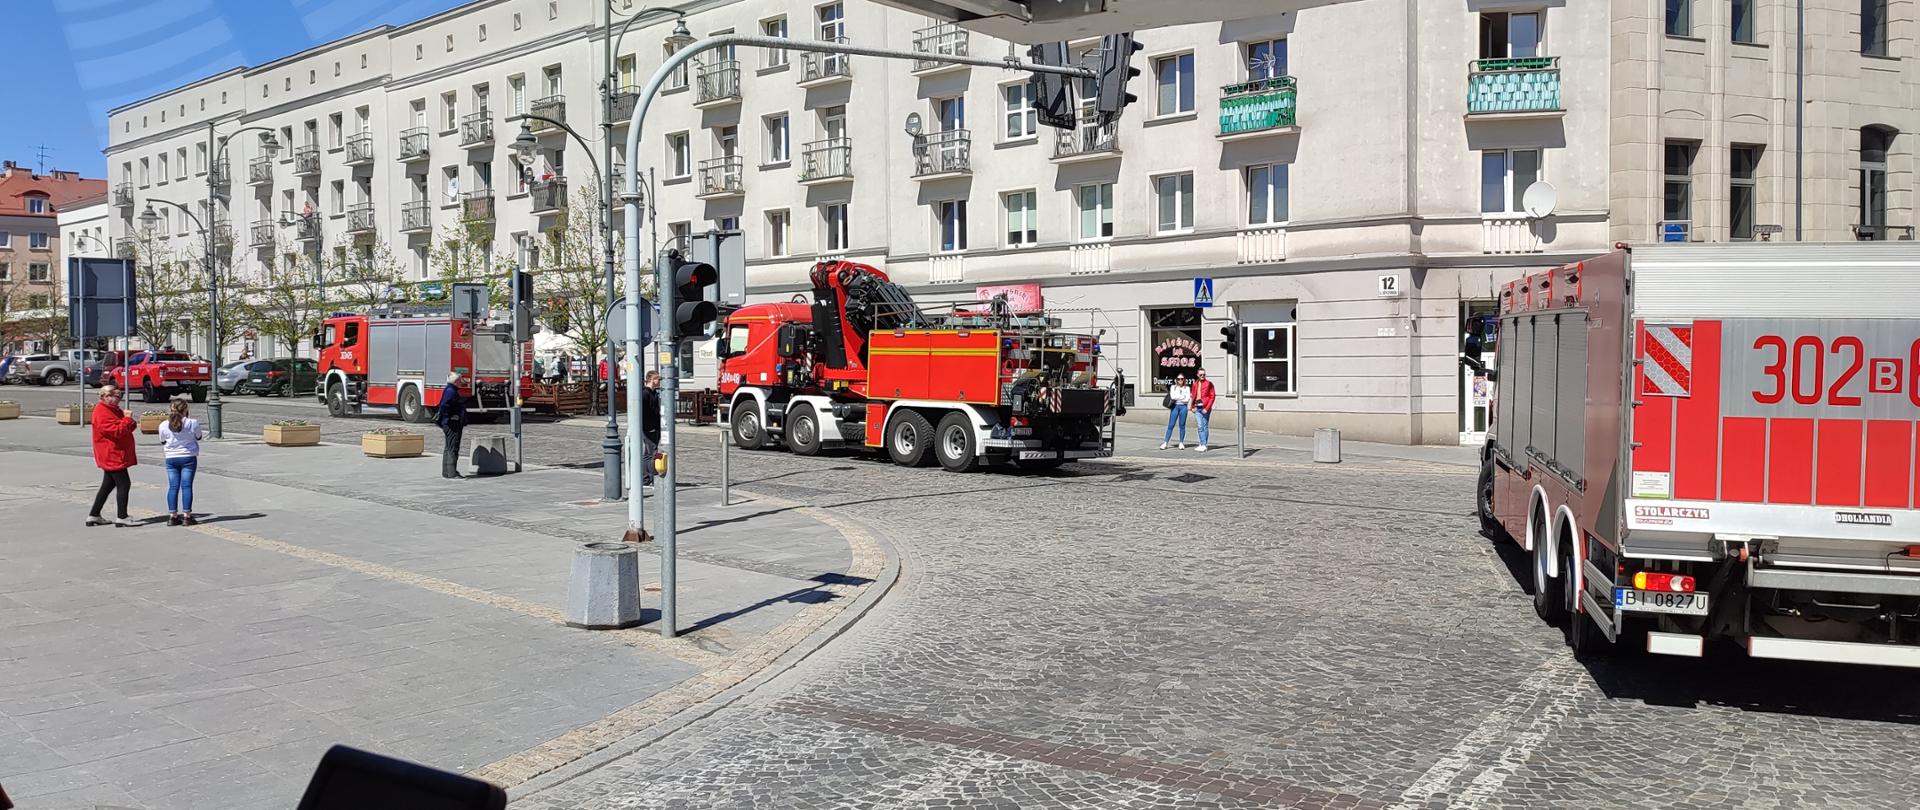 Uroczysty przejazd kolumny pojazdów pożarniczych